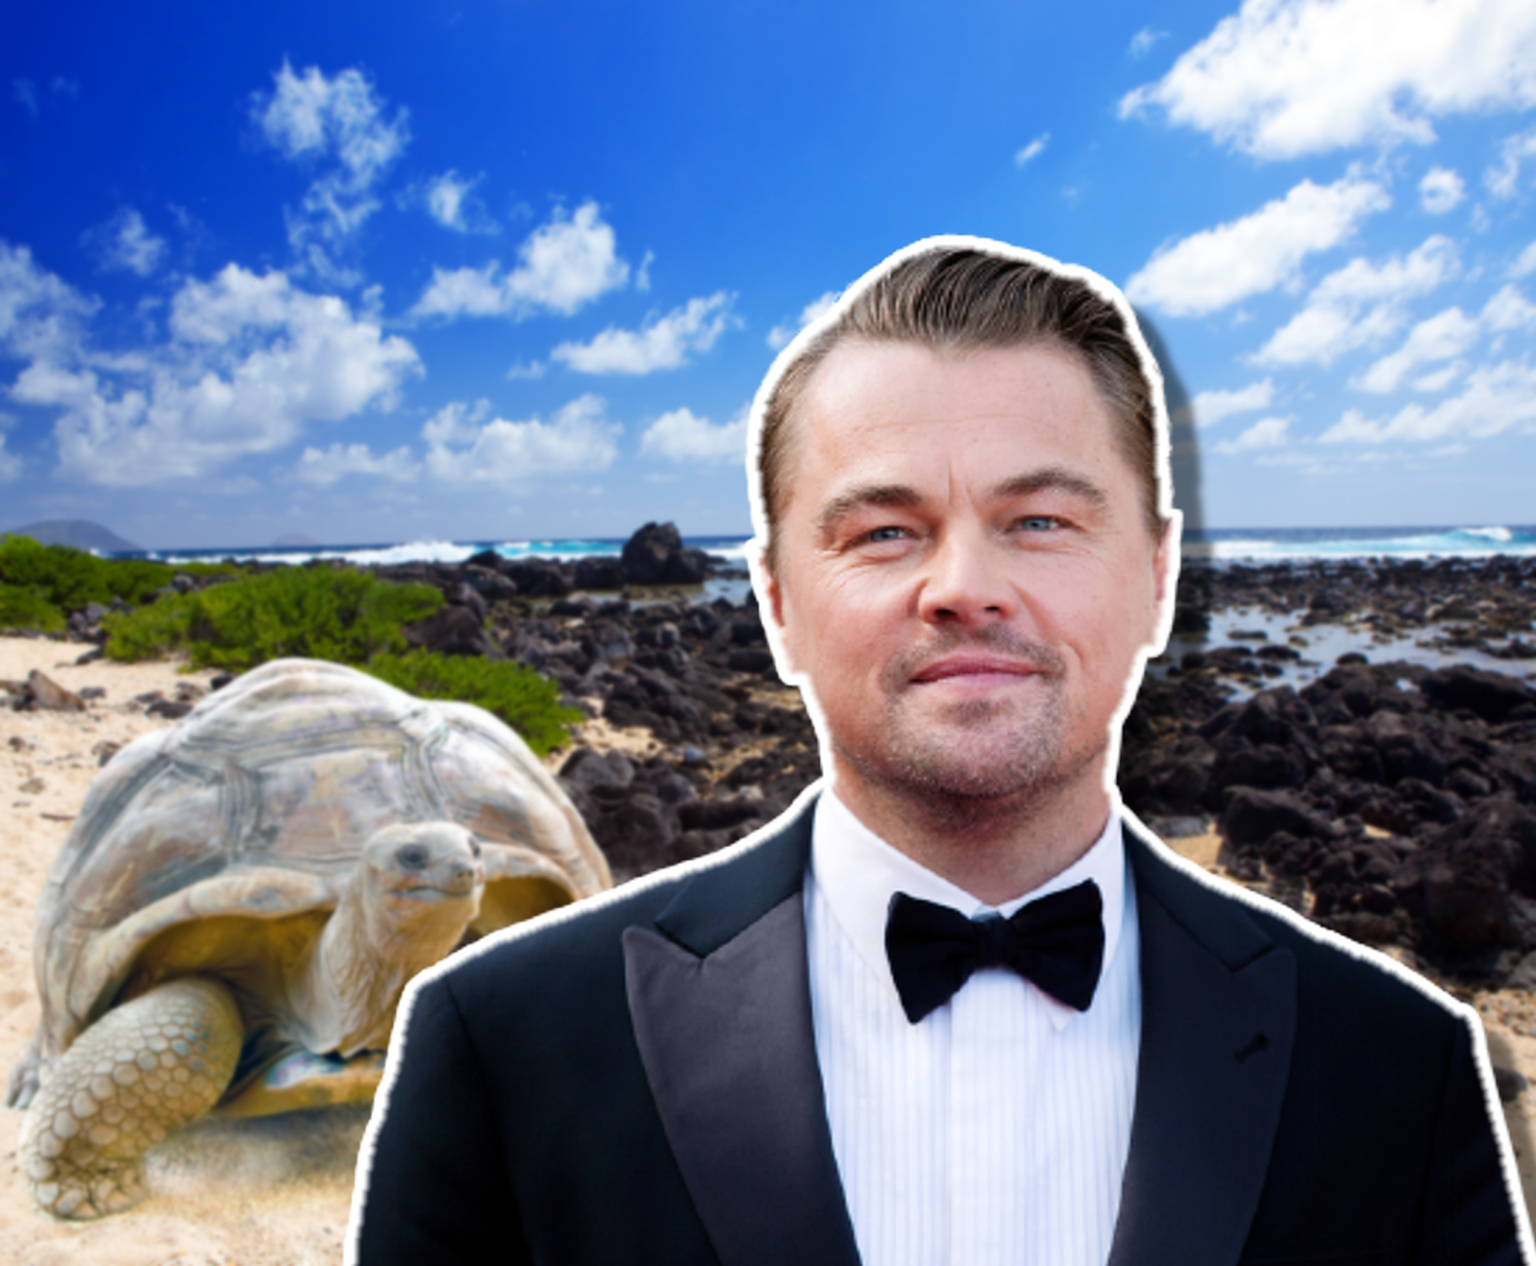 Le projet de Leonardo DiCaprio tend à couvrir de vastes projets qui concernent l'île Floreana. Un endroit des Galápagos qui abrite notamment 54 espèces en voie de disparition.